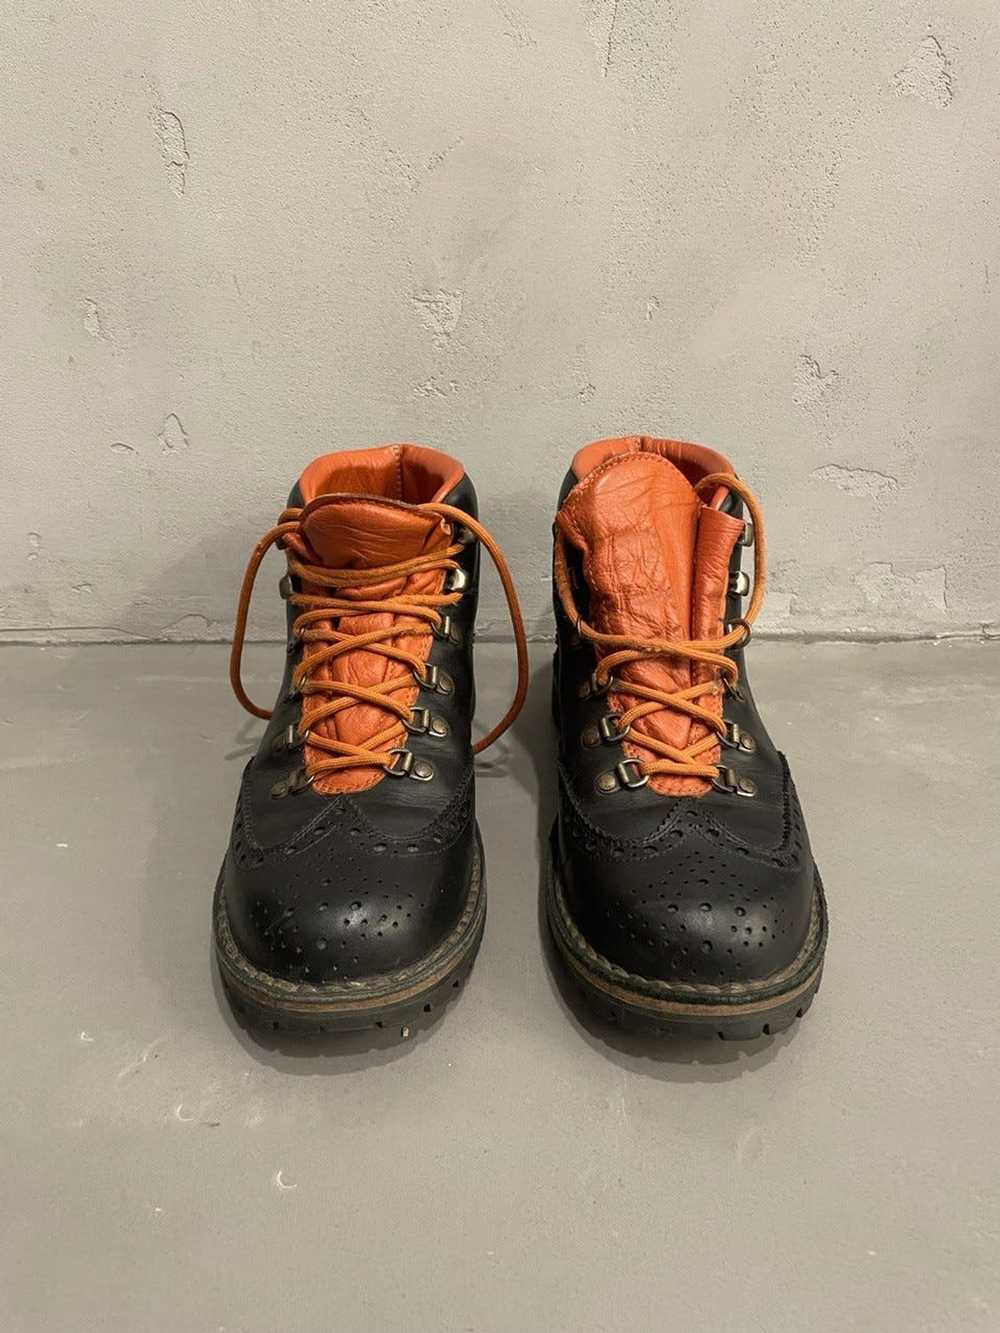 Diemme Leather boots - image 3